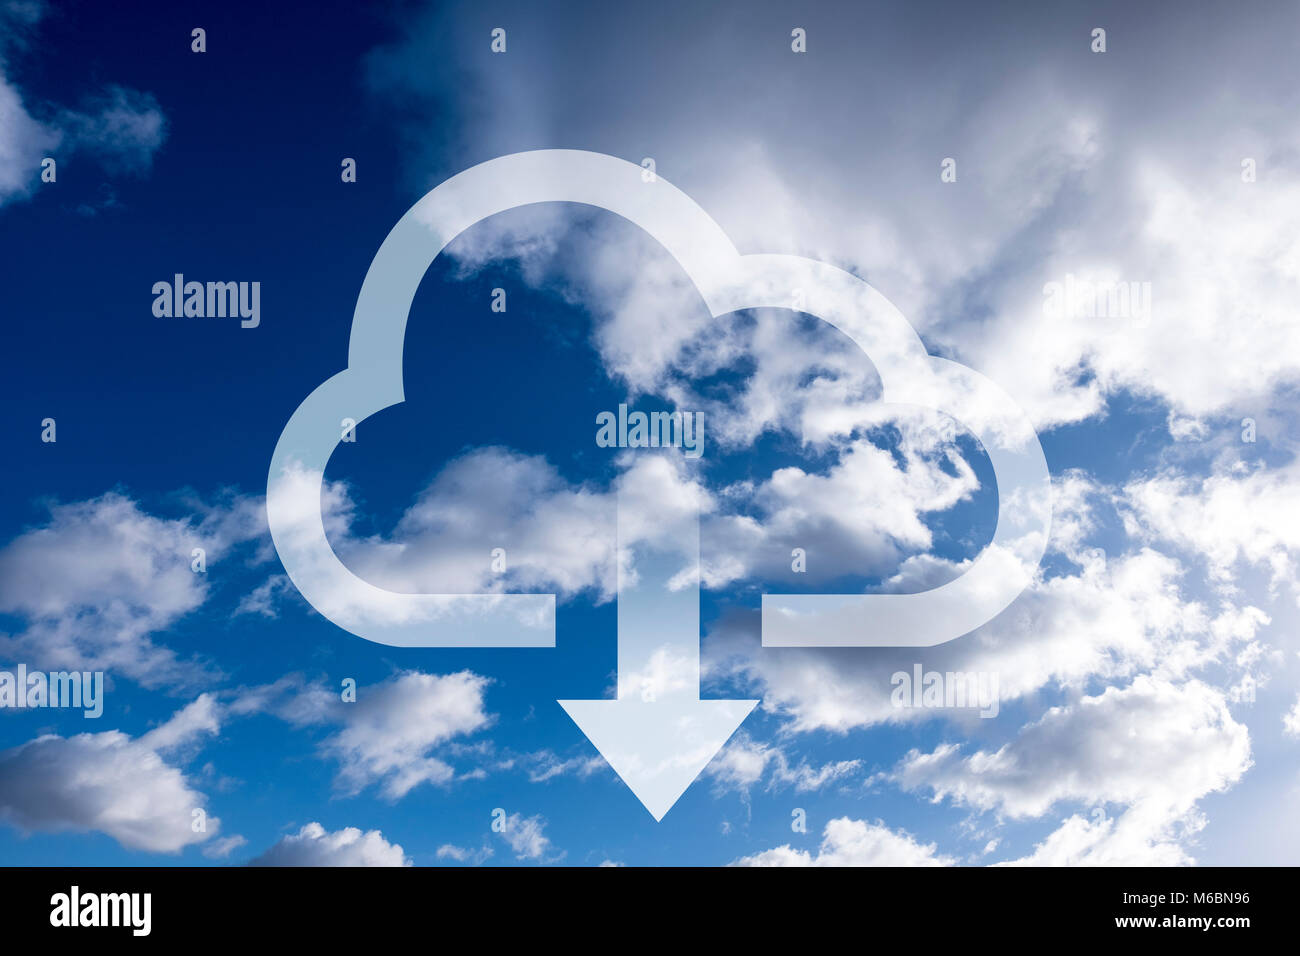 Dibujo de nube con flecha abajo representando a descargar desde un equipo remoto de servidor. Cielo azul y nubes en el fondo de la imagen indica la accessi Foto de stock